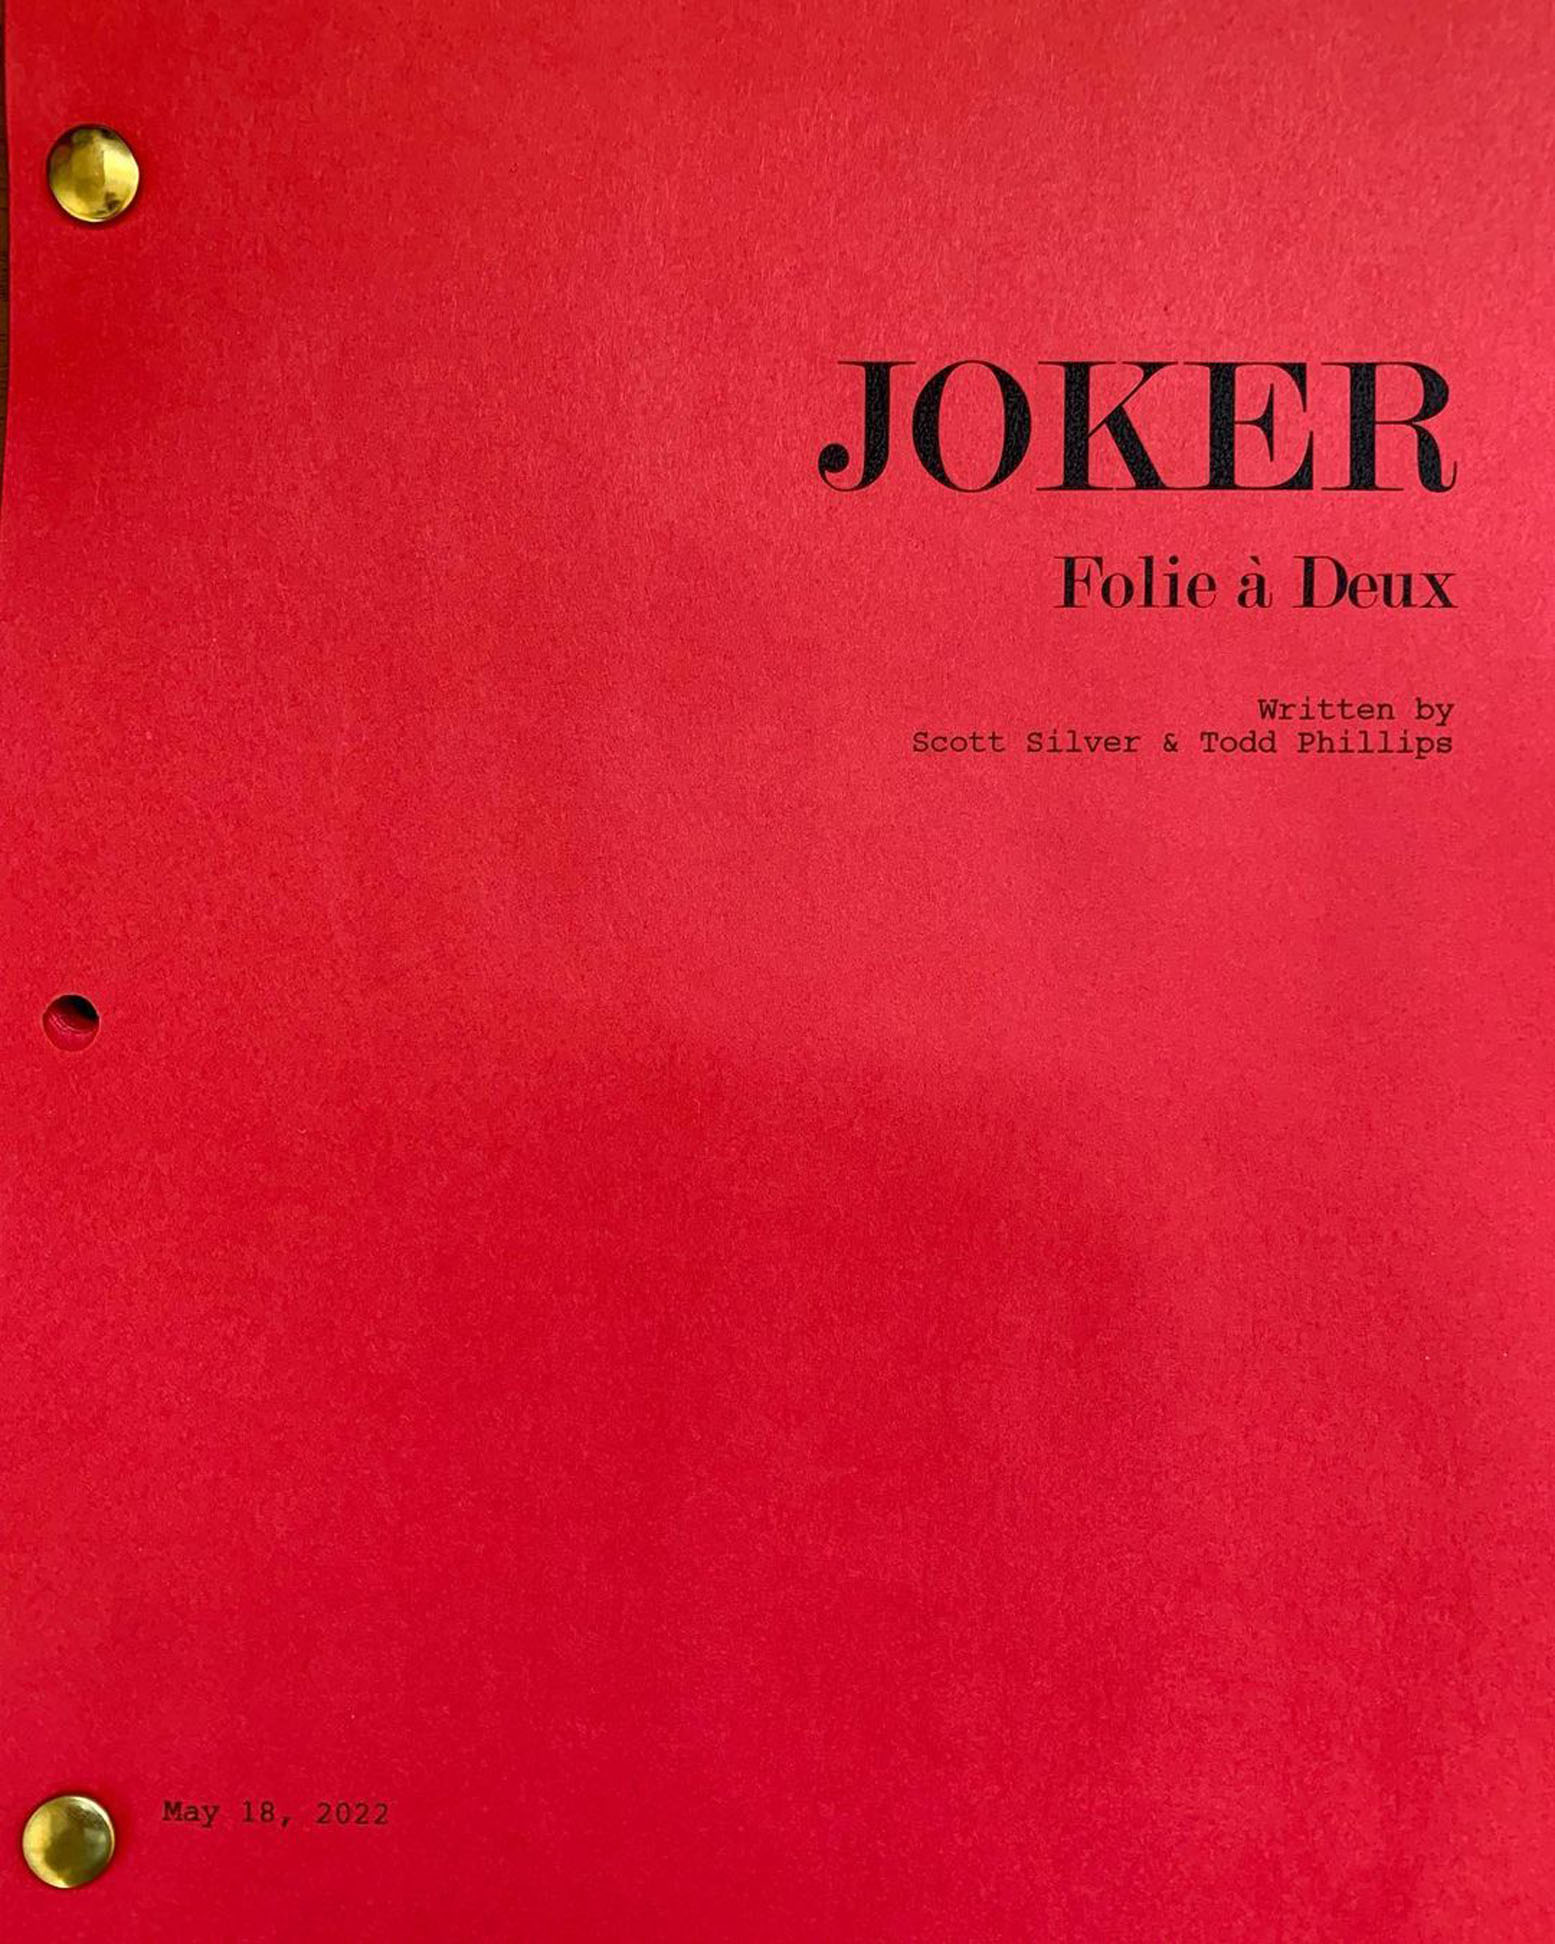 Joker 2 Joker Folie a deux Joaquin Phoenix Arthur Fleck